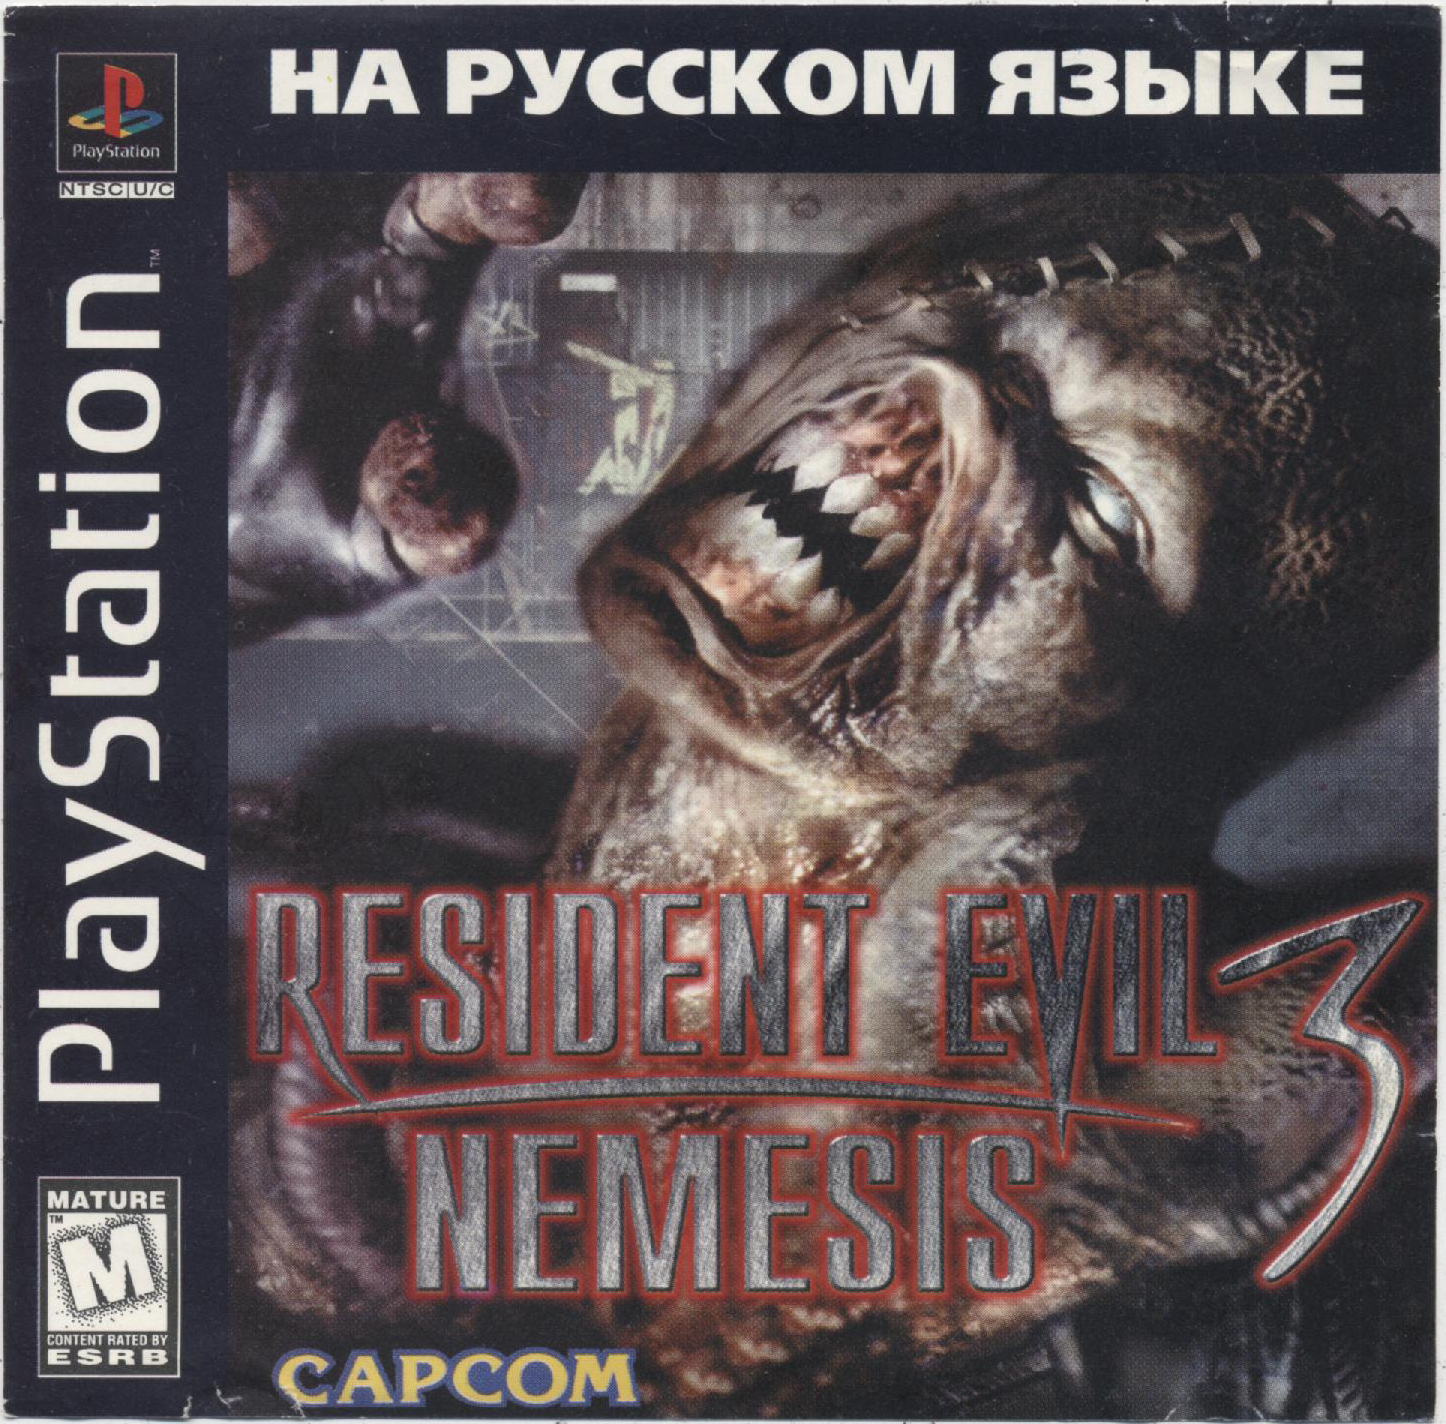 Resident evil 3 ps